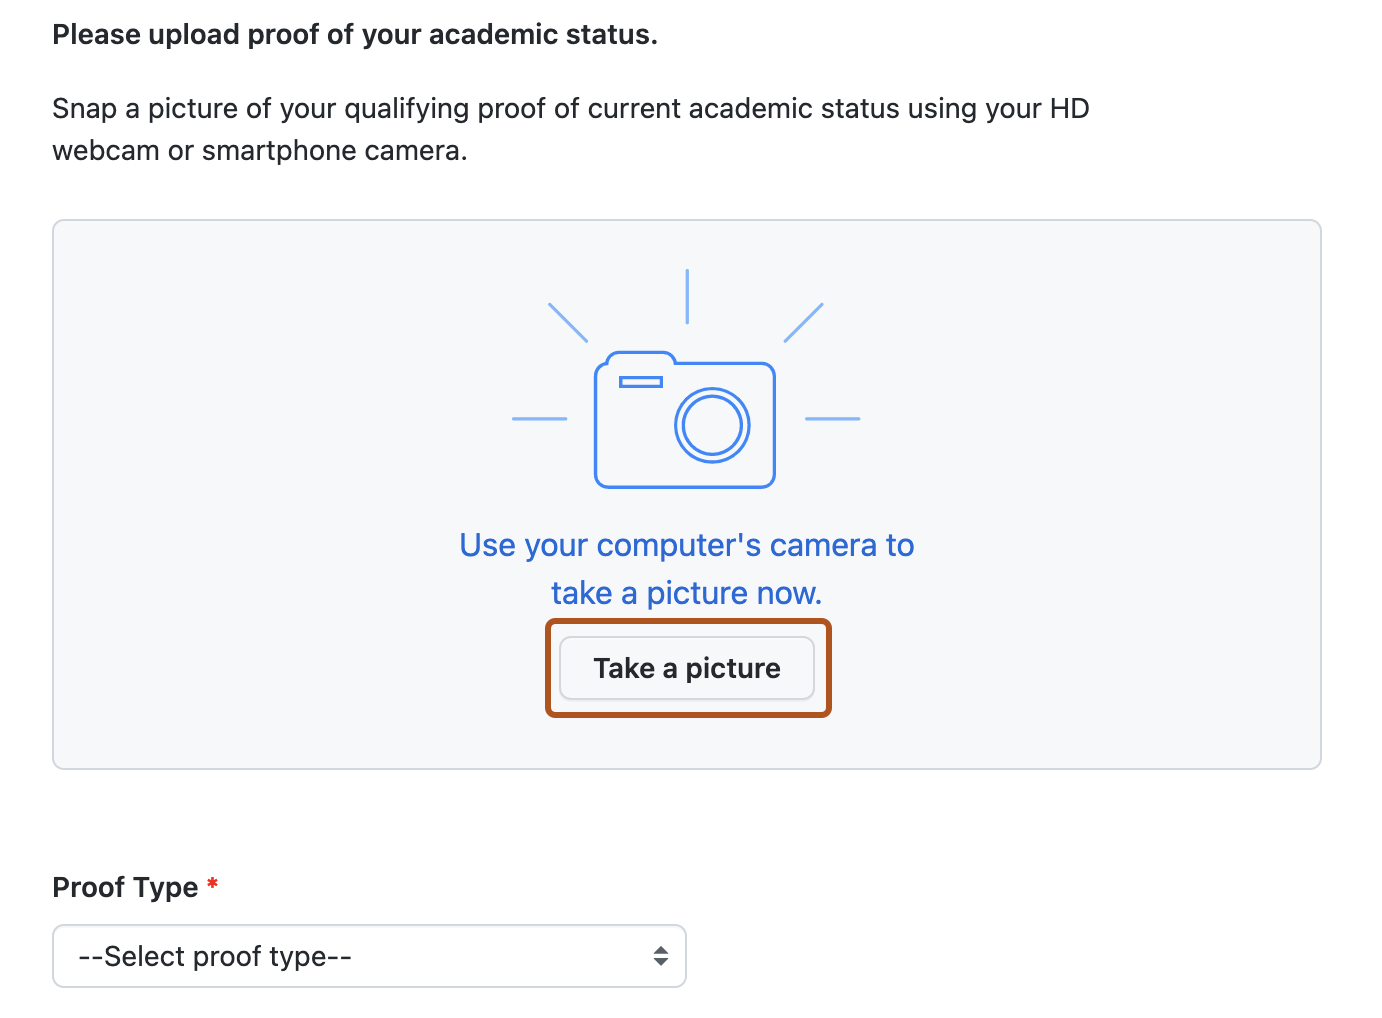 Captura de pantalla de la página para proporcionar una prueba de foto de tu estado académico. El botón "Hacer una foto" aparece resaltado con un contorno naranja oscuro.